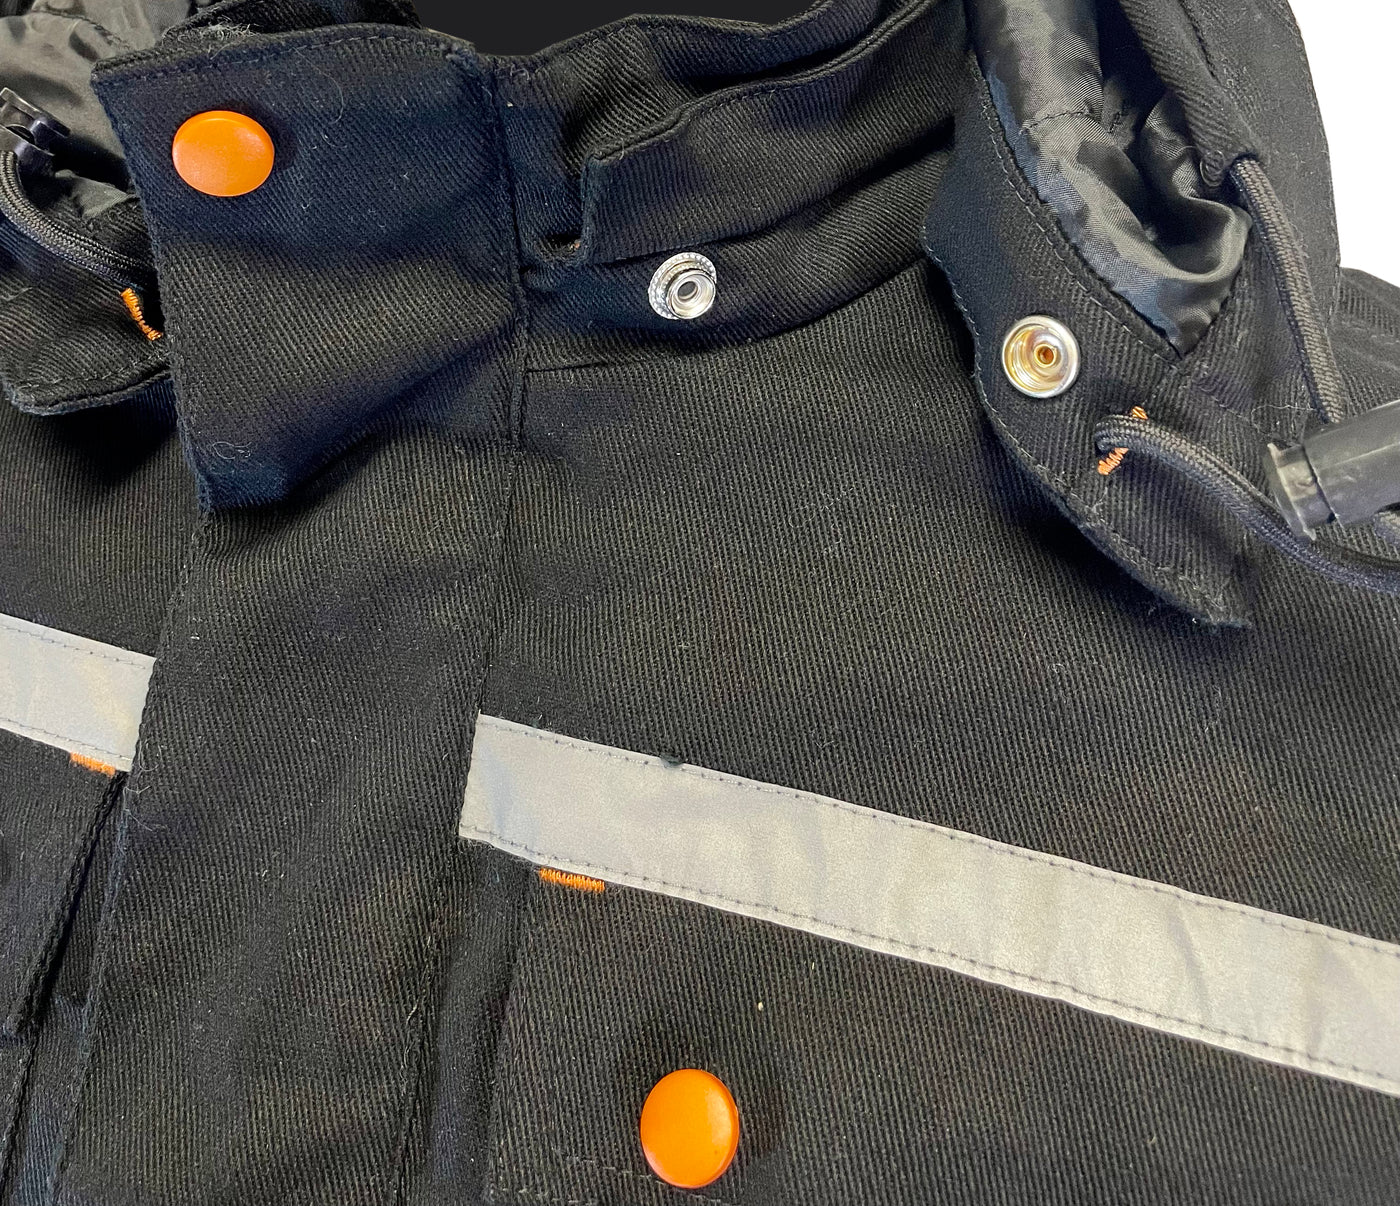 Manteau de travail homme "Igloo" - Orange River